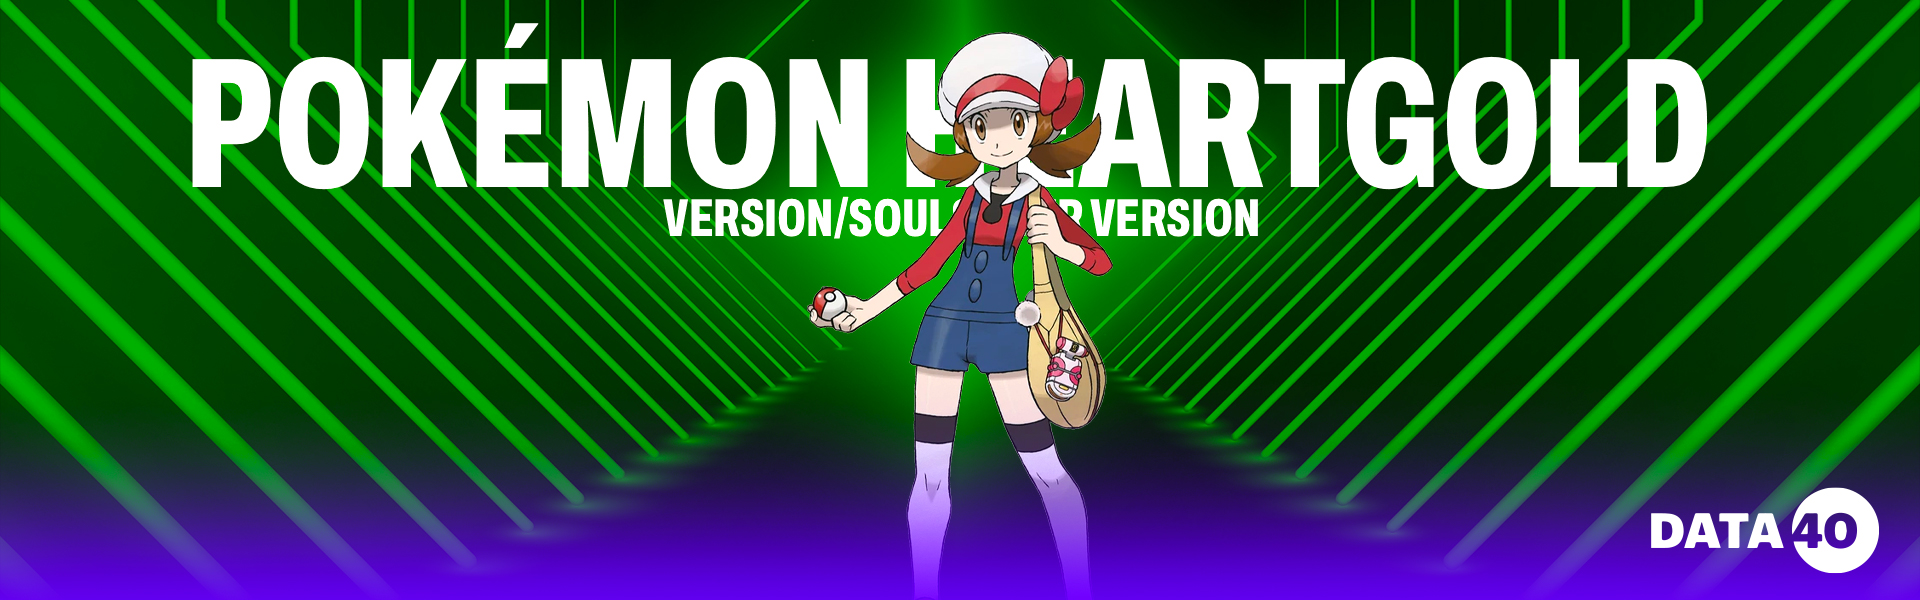 Pokémon HeartGold Version/SoulSilver Version